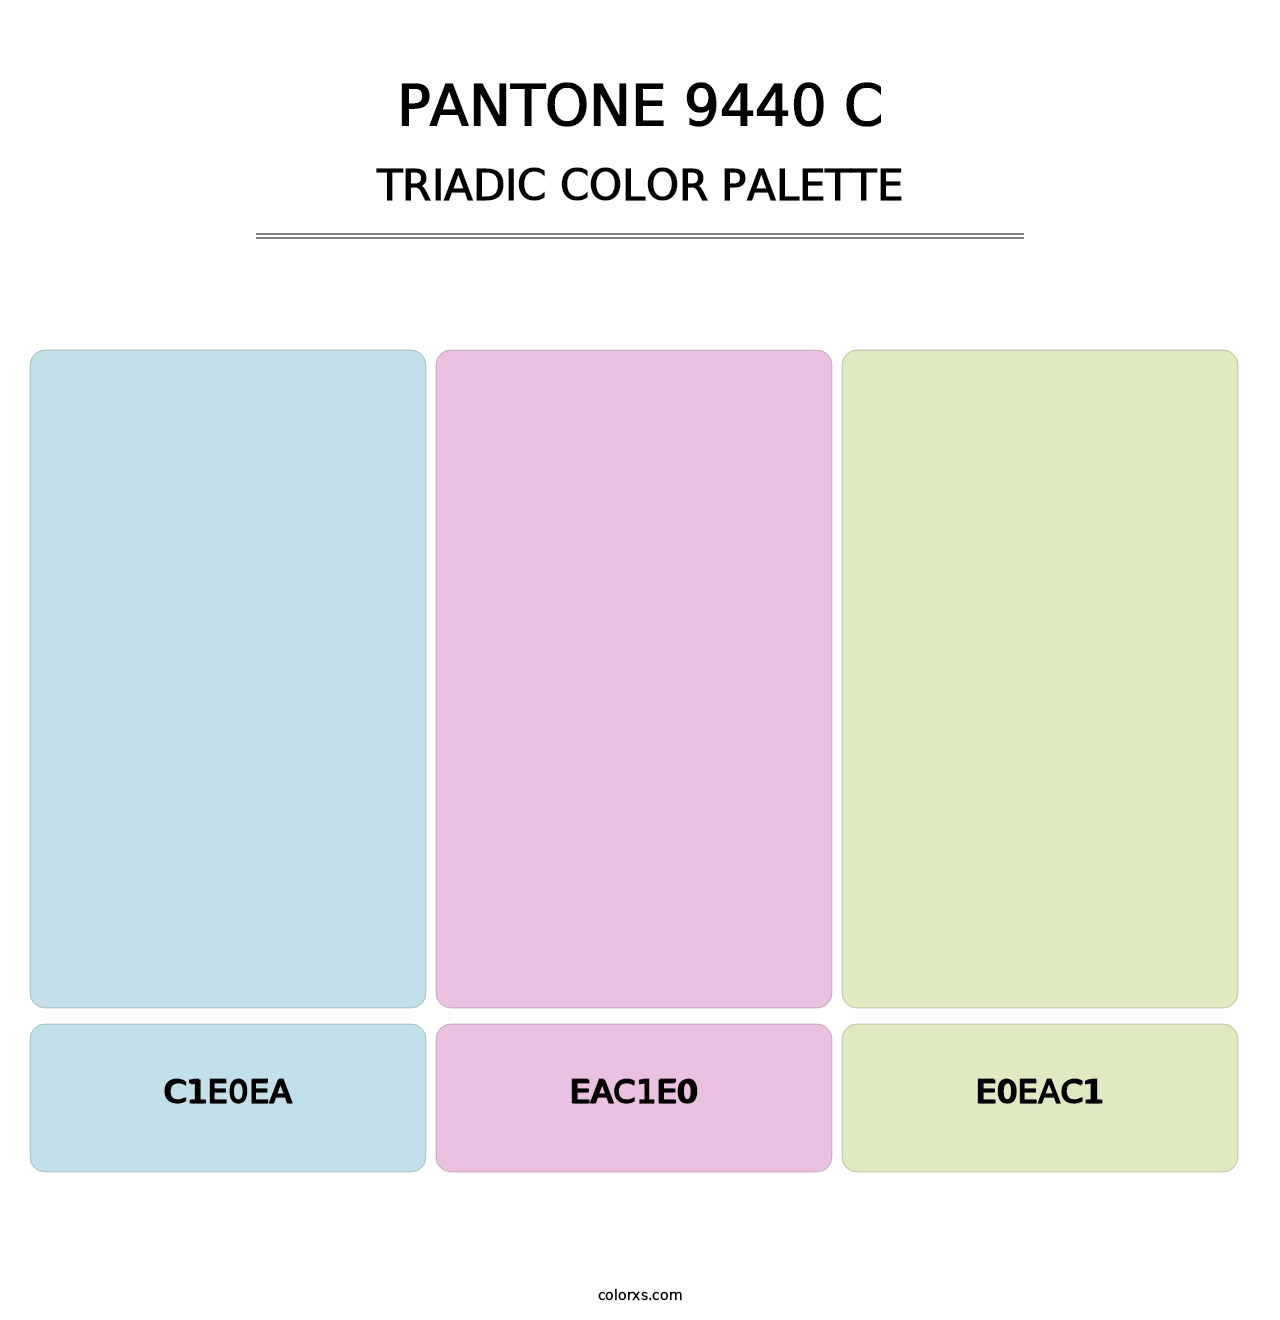 PANTONE 9440 C - Triadic Color Palette